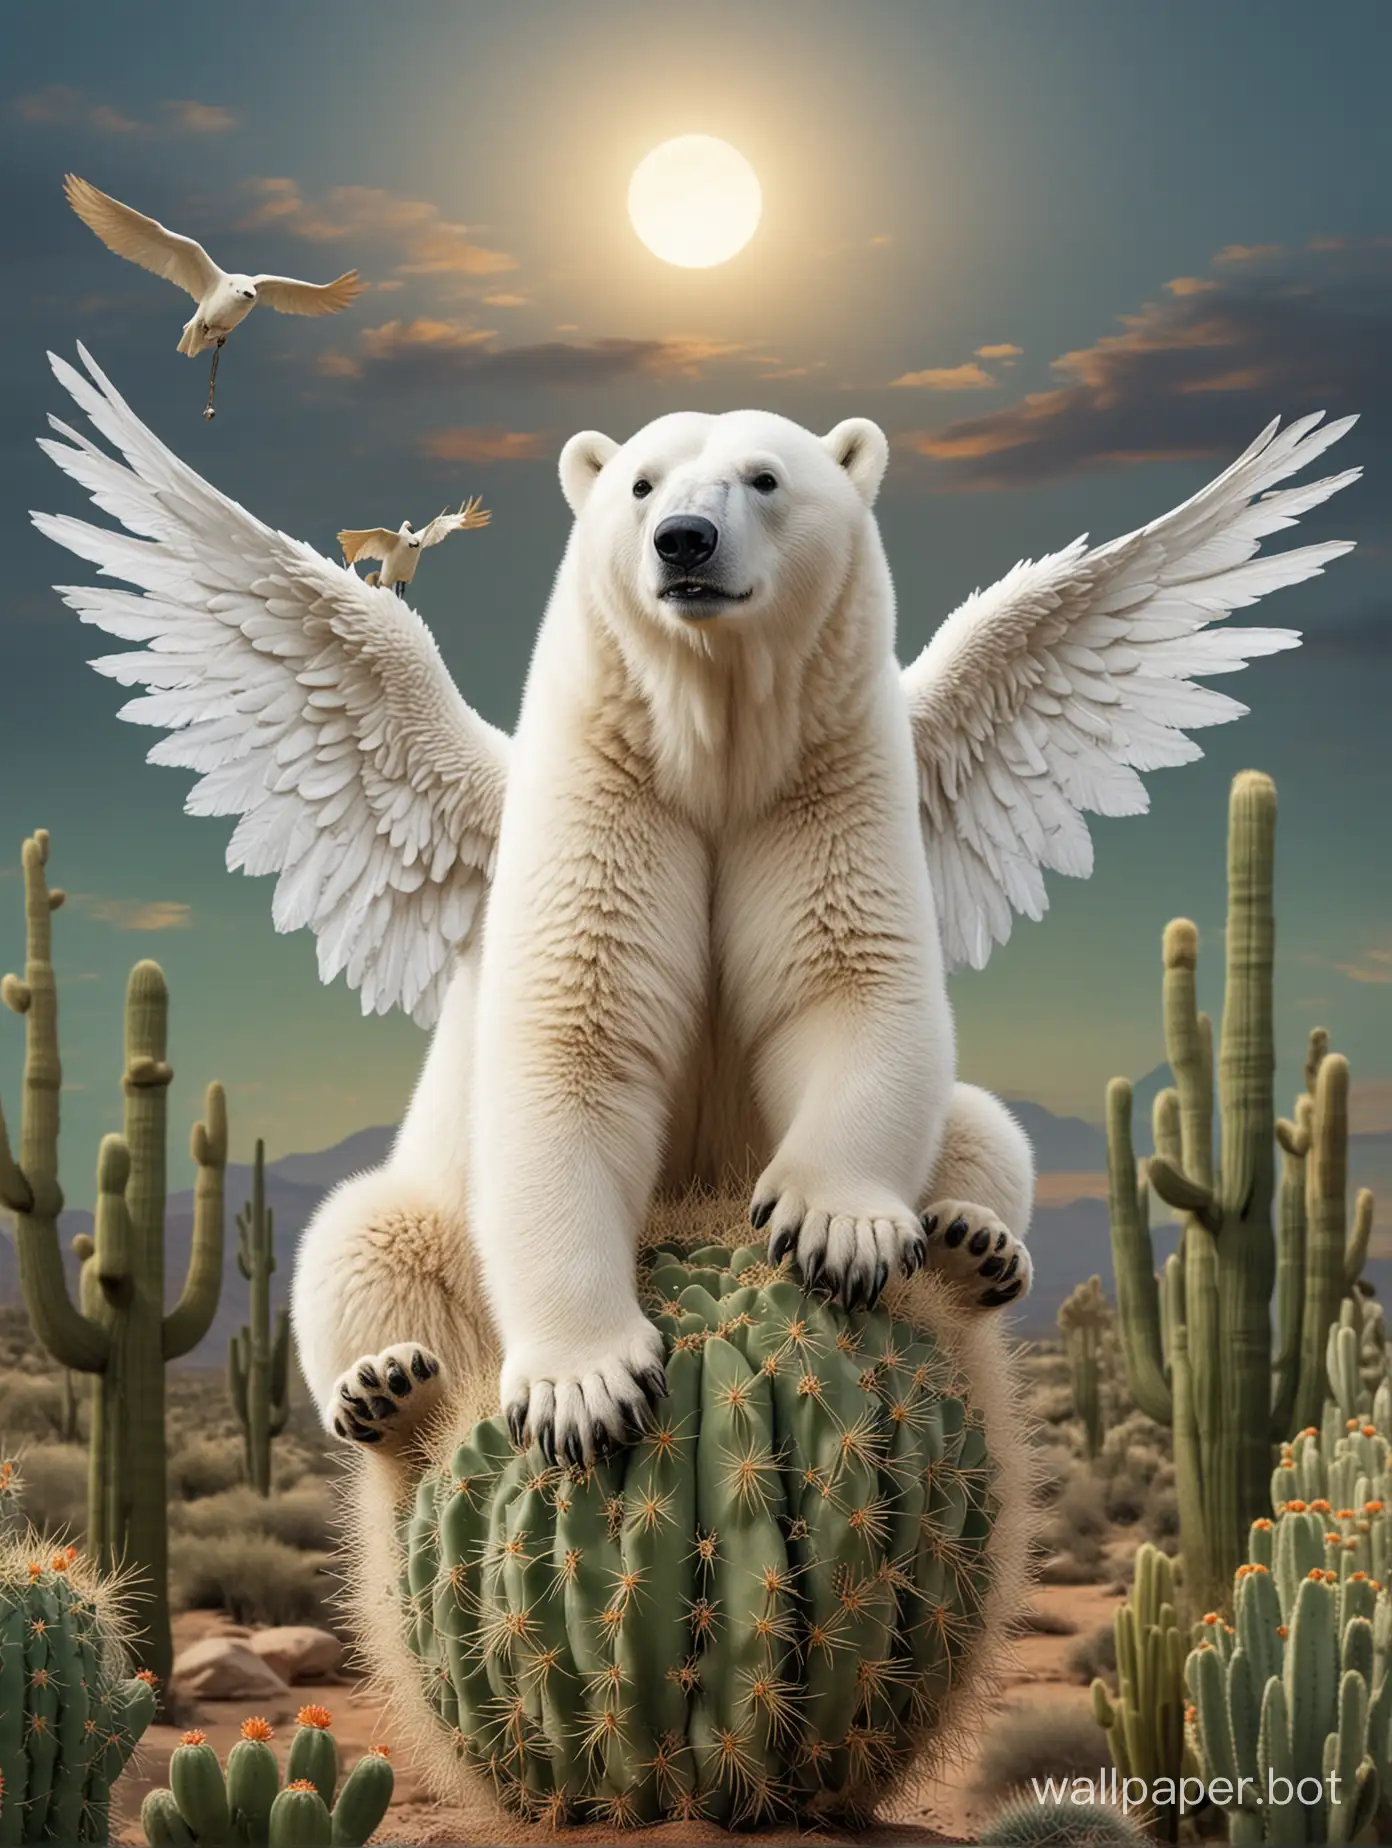 polar bear on a cactus with wings